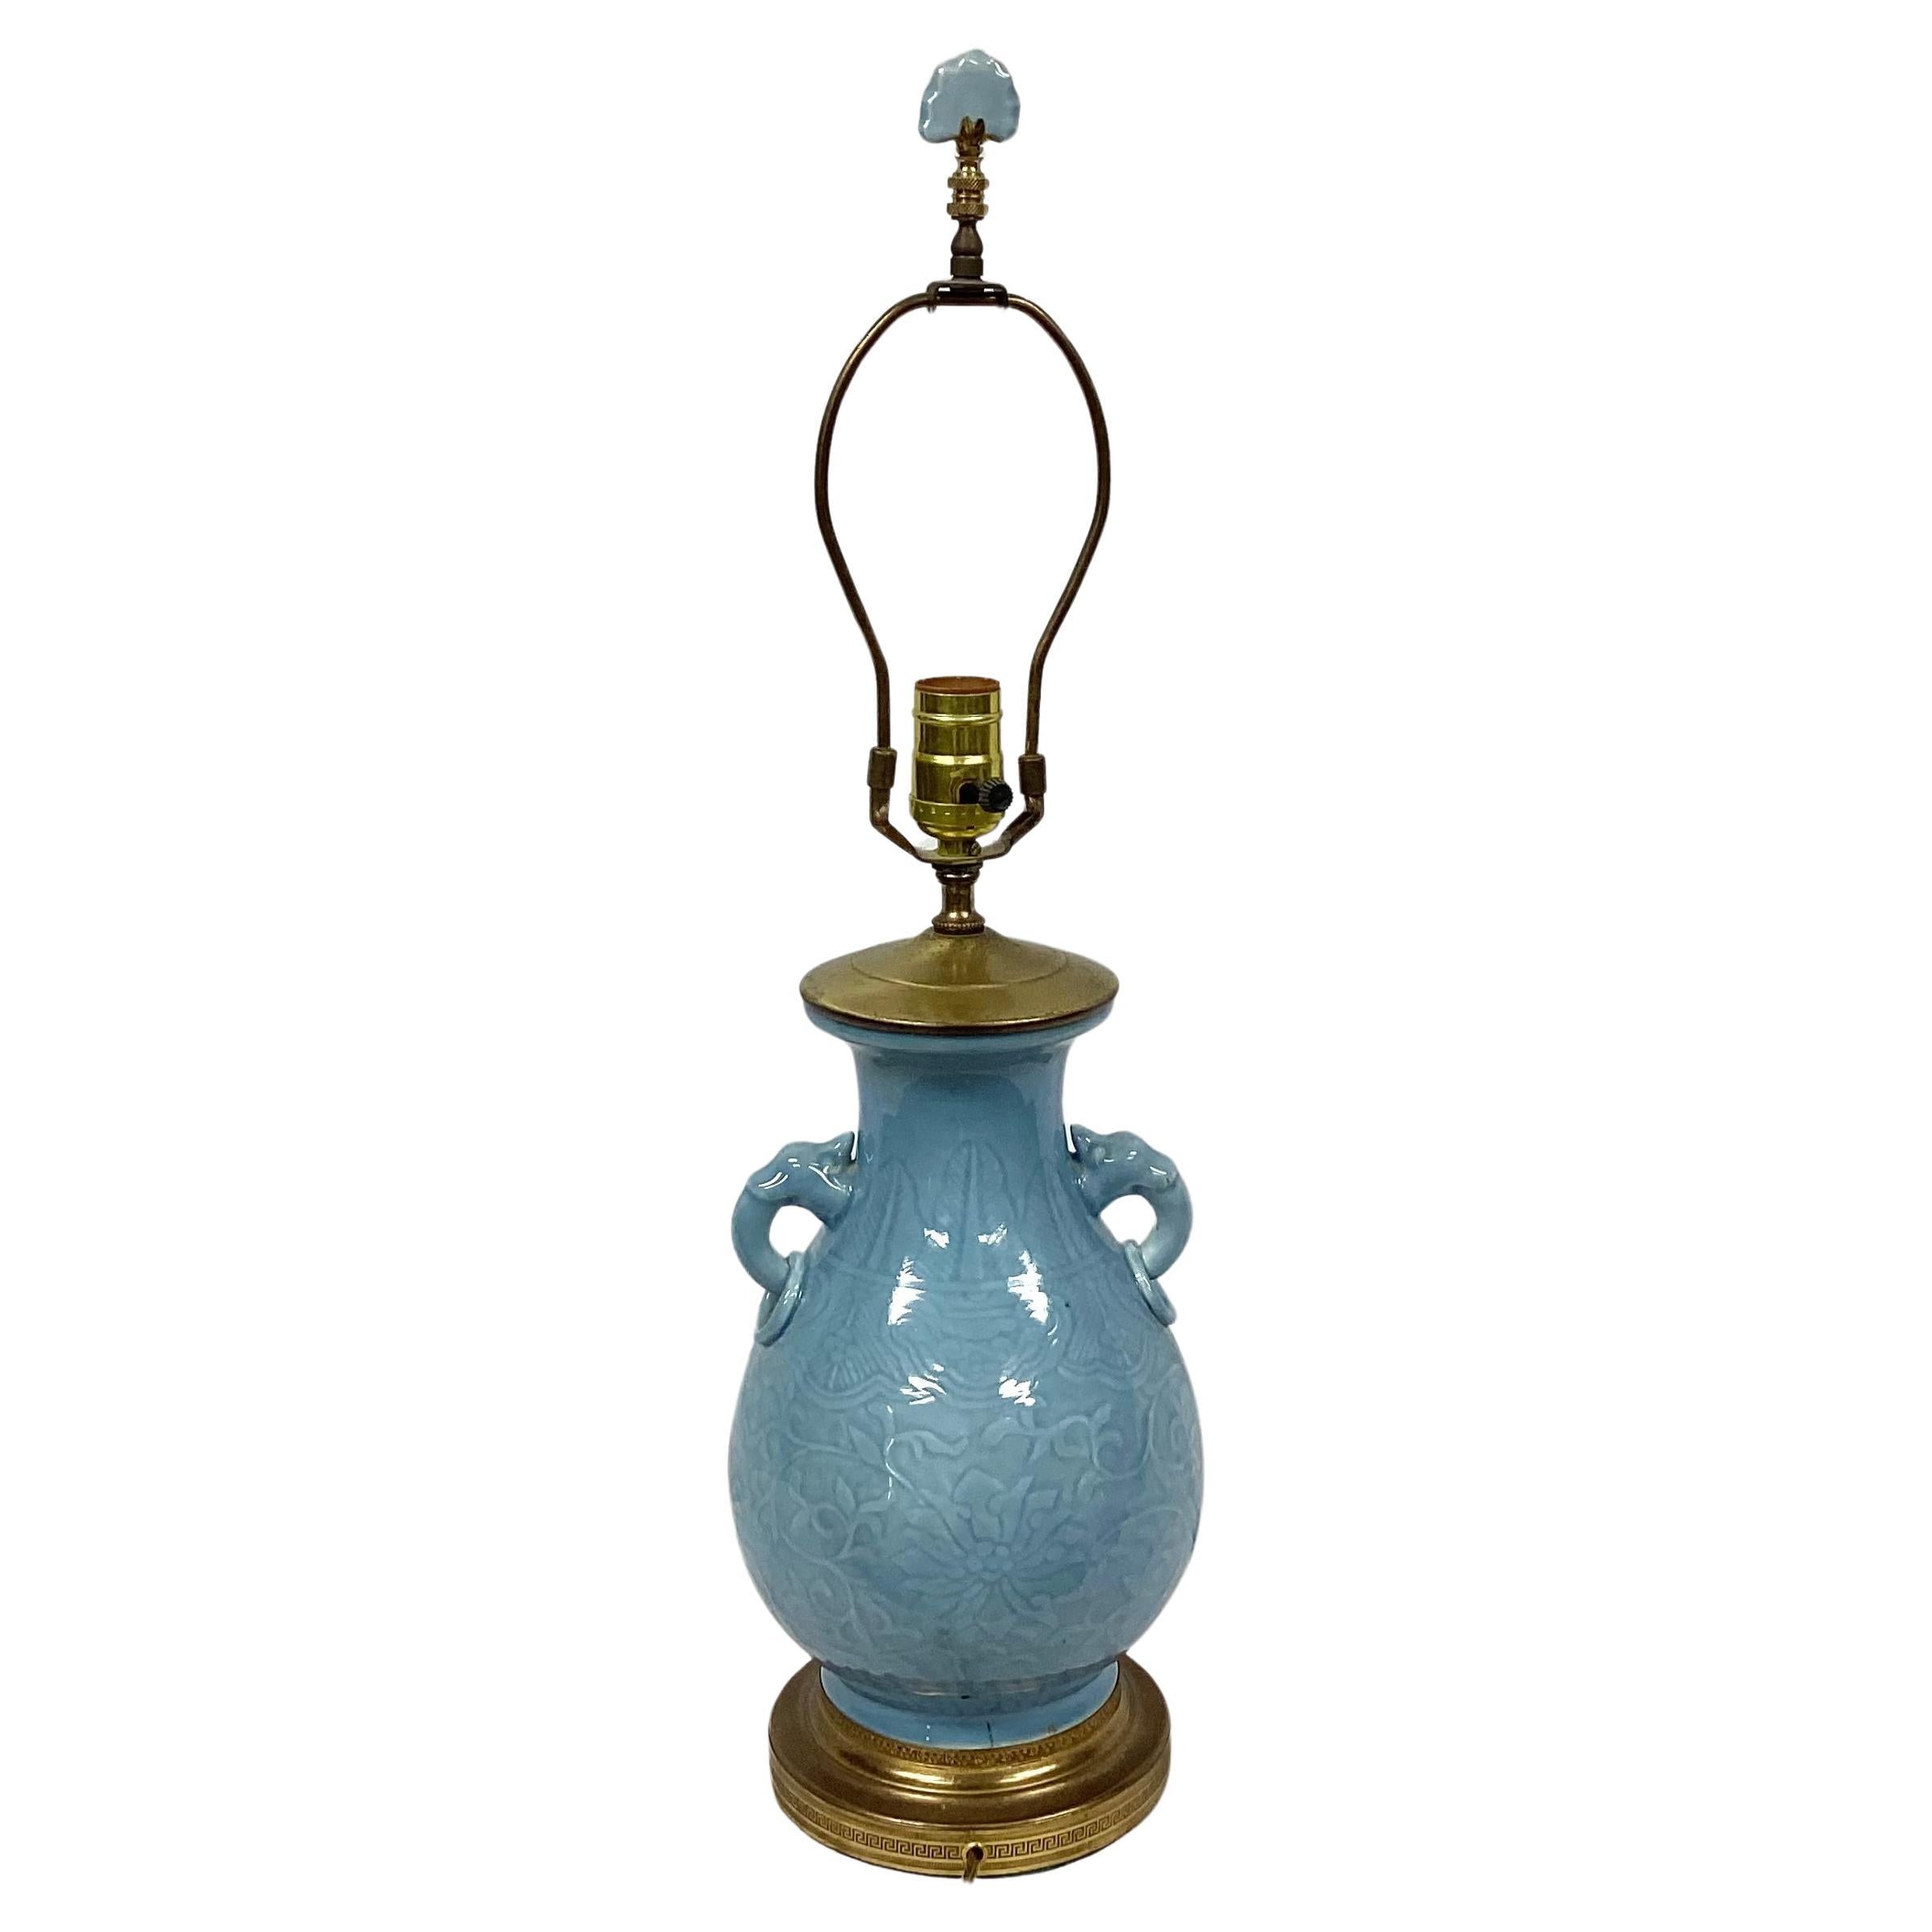 Mitte des 20. Jahrhunderts Chinesisch vergoldet Messing montiert Celadon Porzellan-Lampe mit geformten Elefanten Ring Griffe und passende finial. Inklusive Harfe und Knauf. Geformtes blaues Blumenmotiv in der gesamten Lampe. Montiert auf vergoldetem